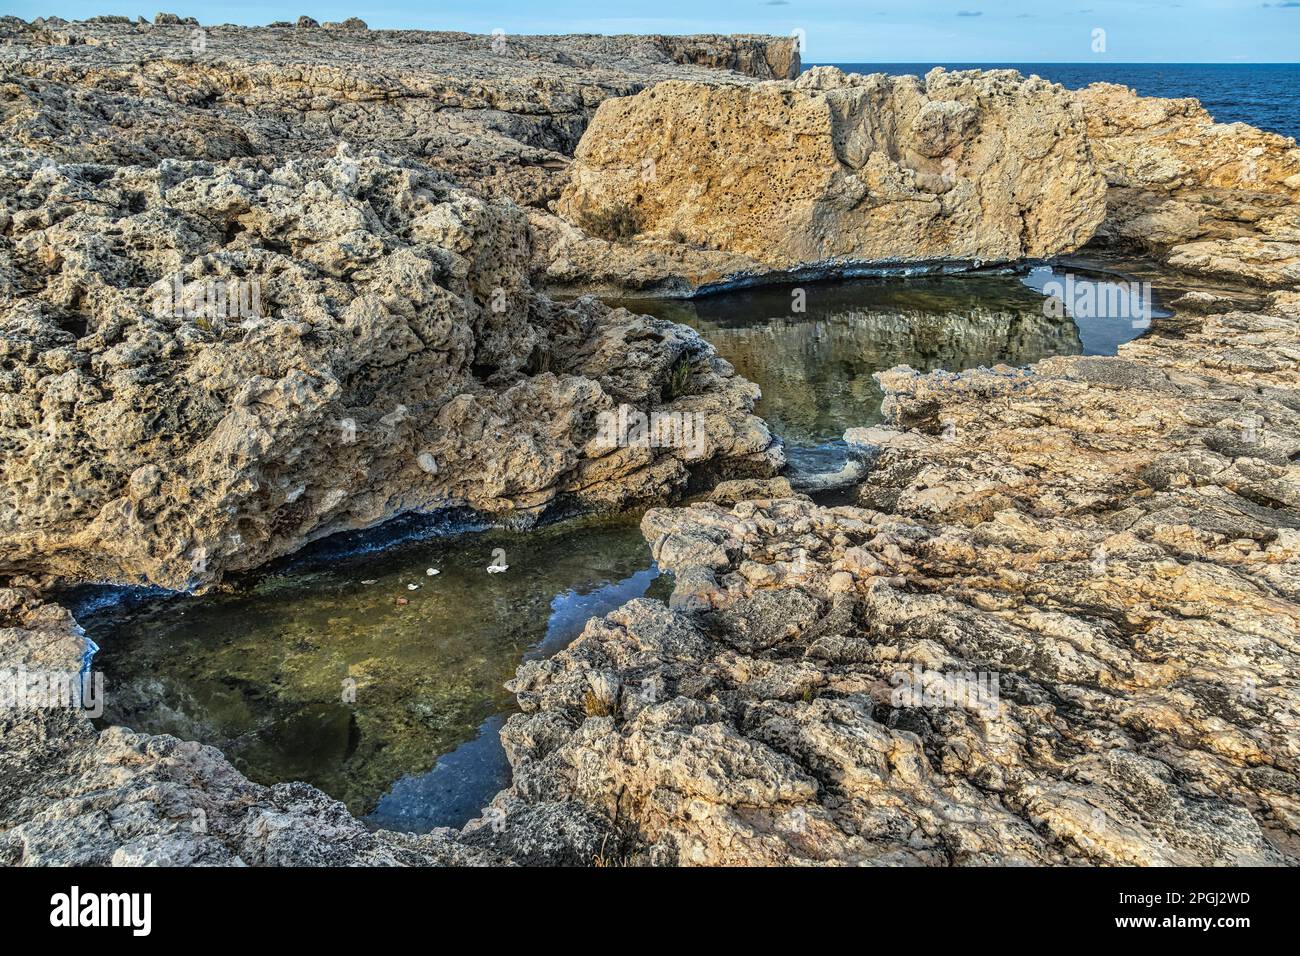 Die Felsen, die Pfützen des Meerwassers im Naturschutzgebiet Plemmirio. Syrakus, Sizilien, Italien Stockfoto